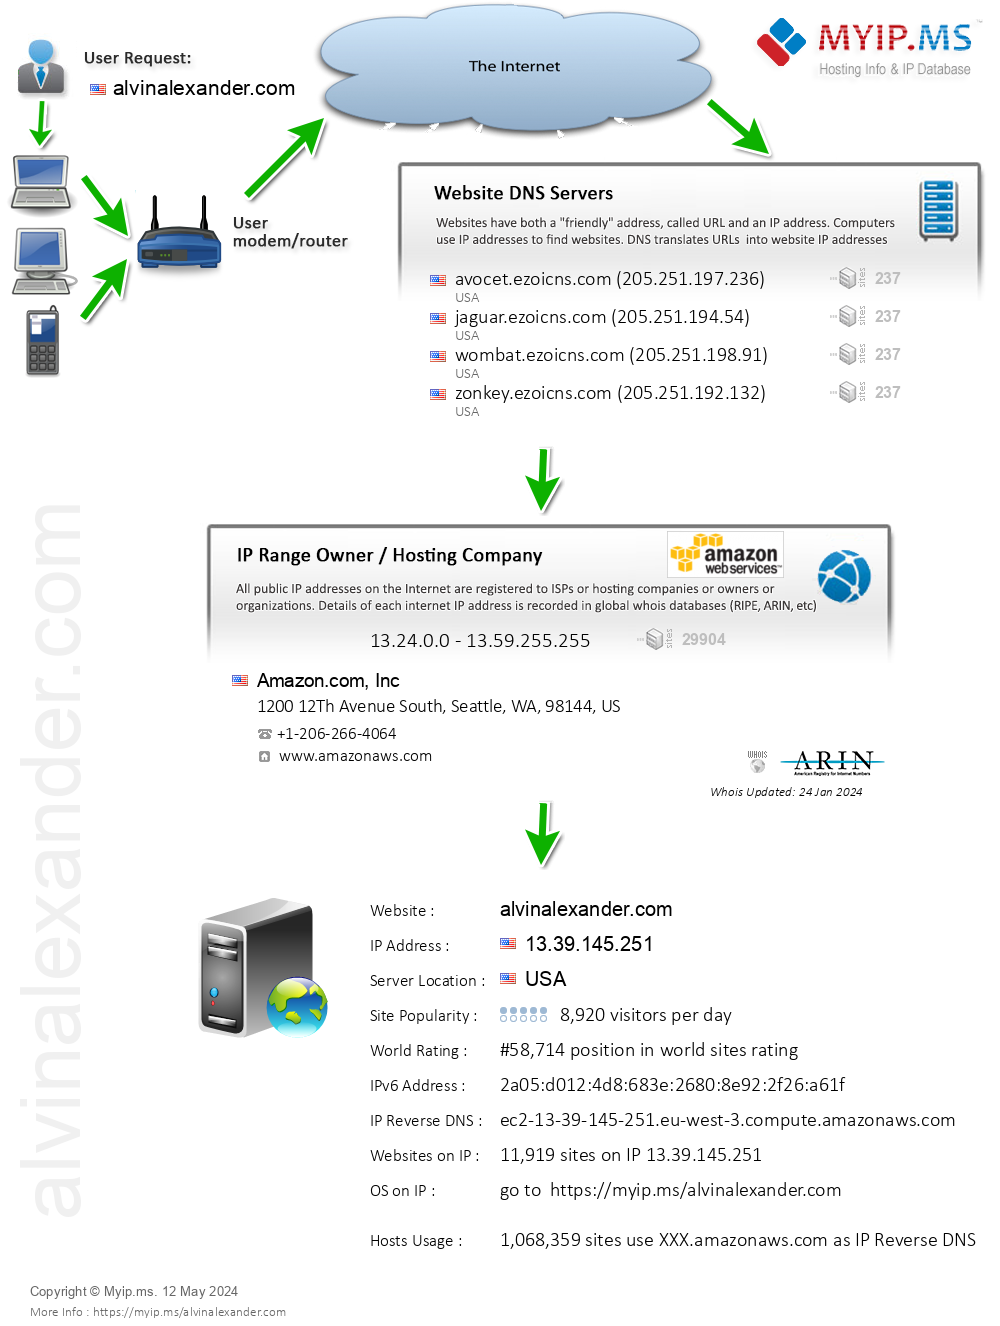 Alvinalexander.com - Website Hosting Visual IP Diagram